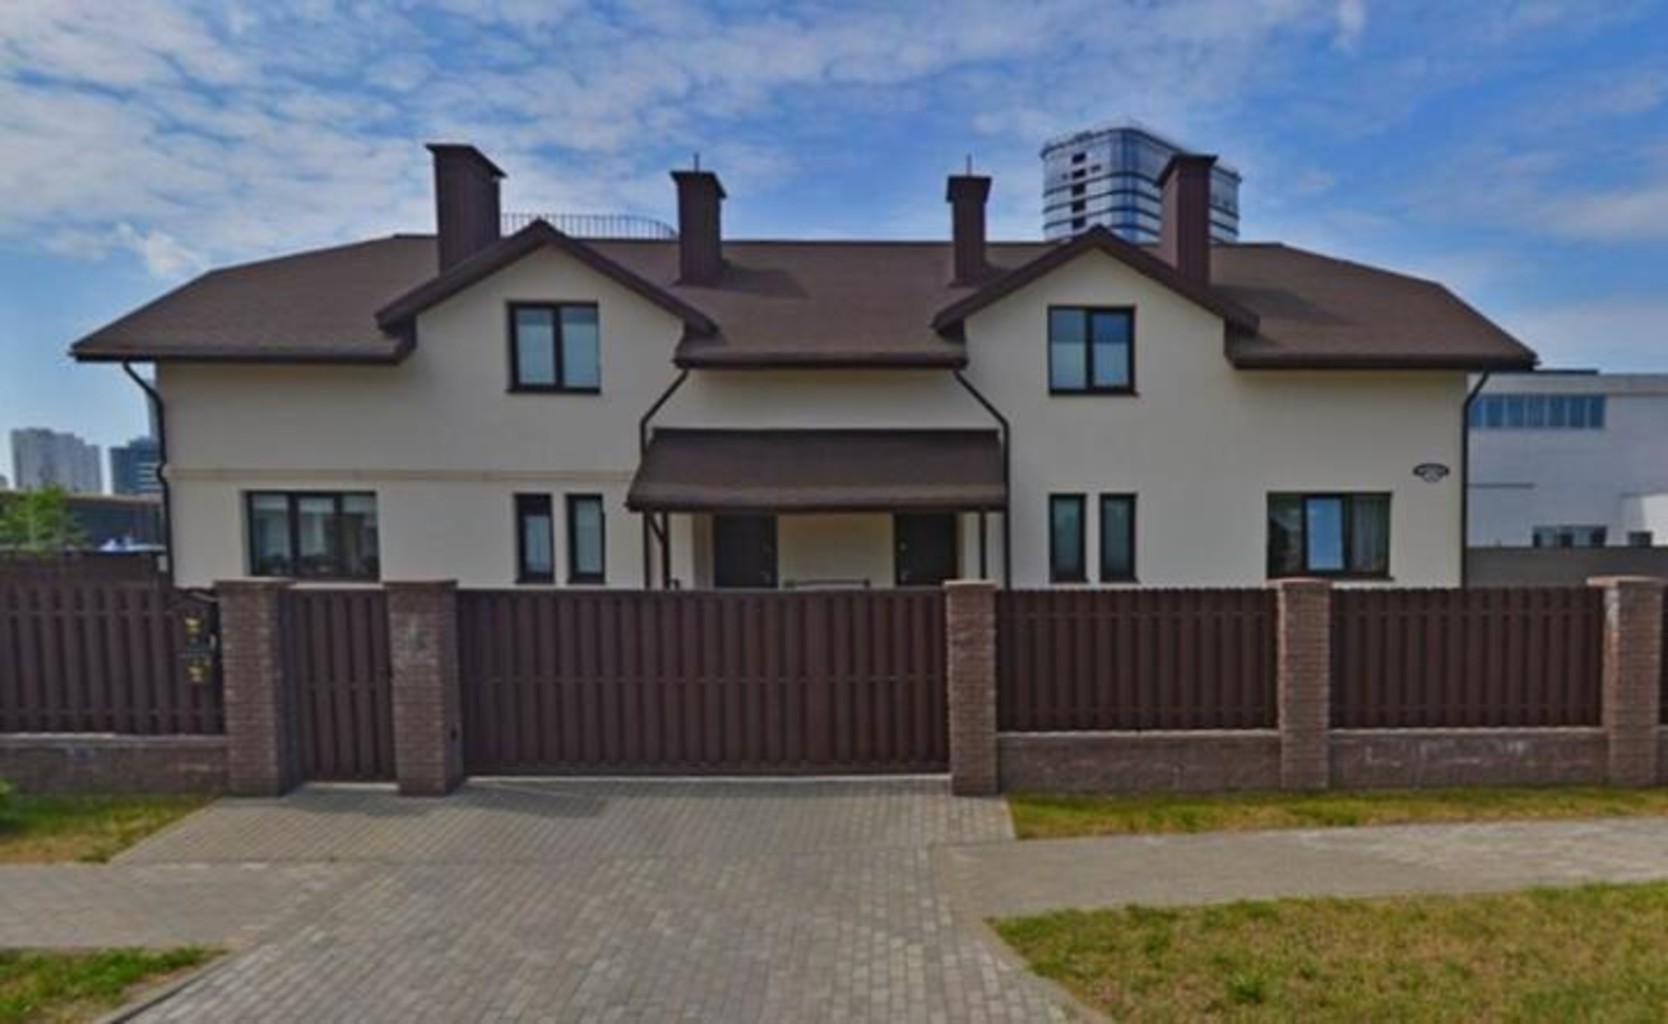 Дом на участке, который выделили Наталье Кочановой. Фото: Яндекс.Карты